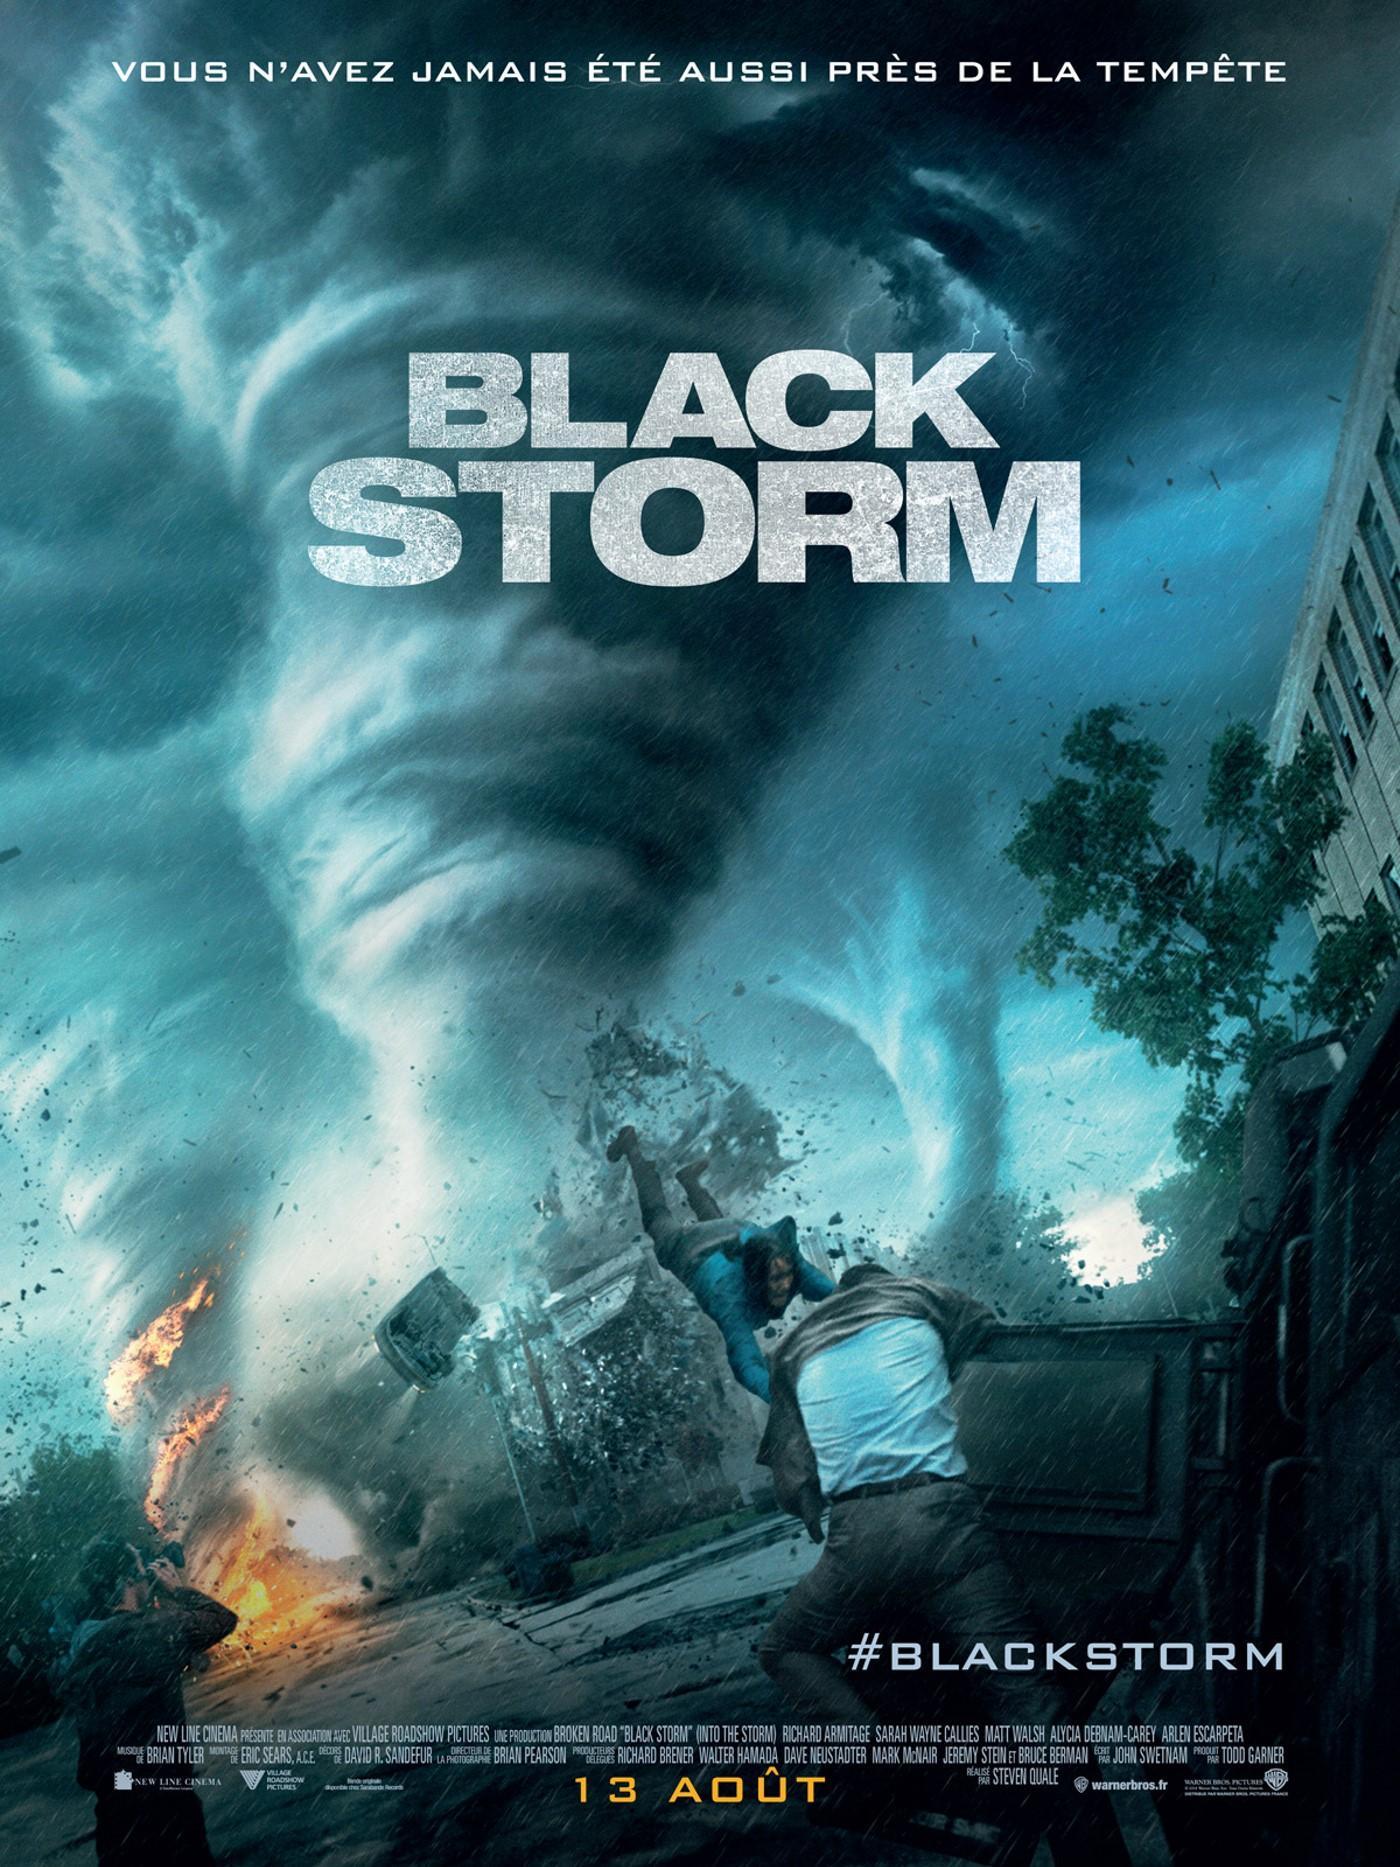 Постер фильма Навстречу шторму | Into the Storm